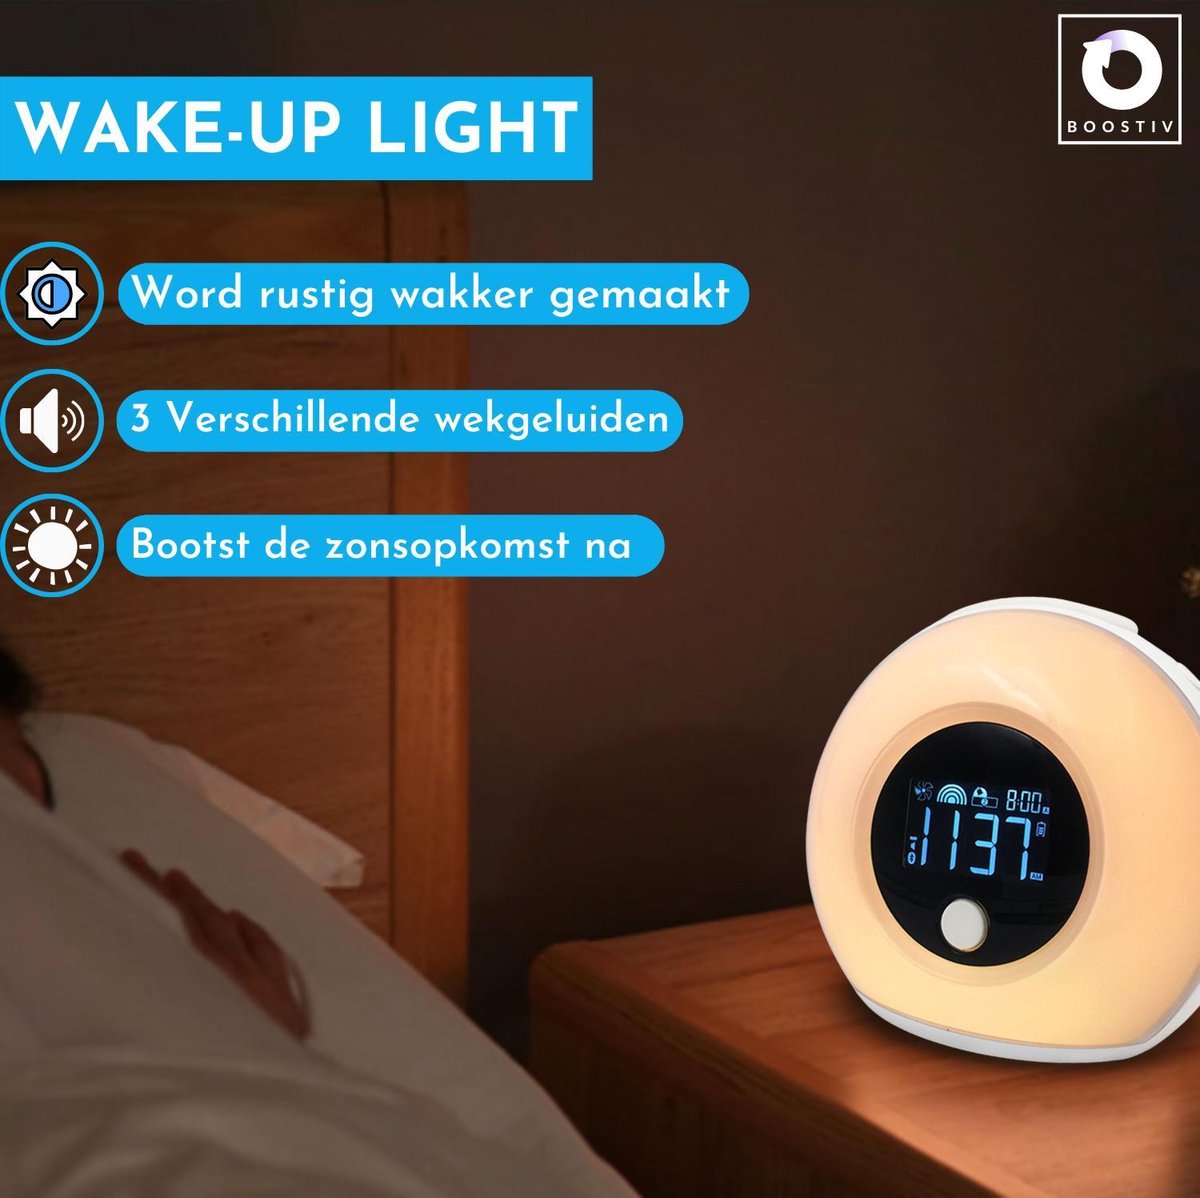 kwaliteit zoon Kolibrie Boostiv Wake-up Light | Nachtlamp | Sfeerlicht | Slaaphulp | Wekker –  Boostiv-brand.nl